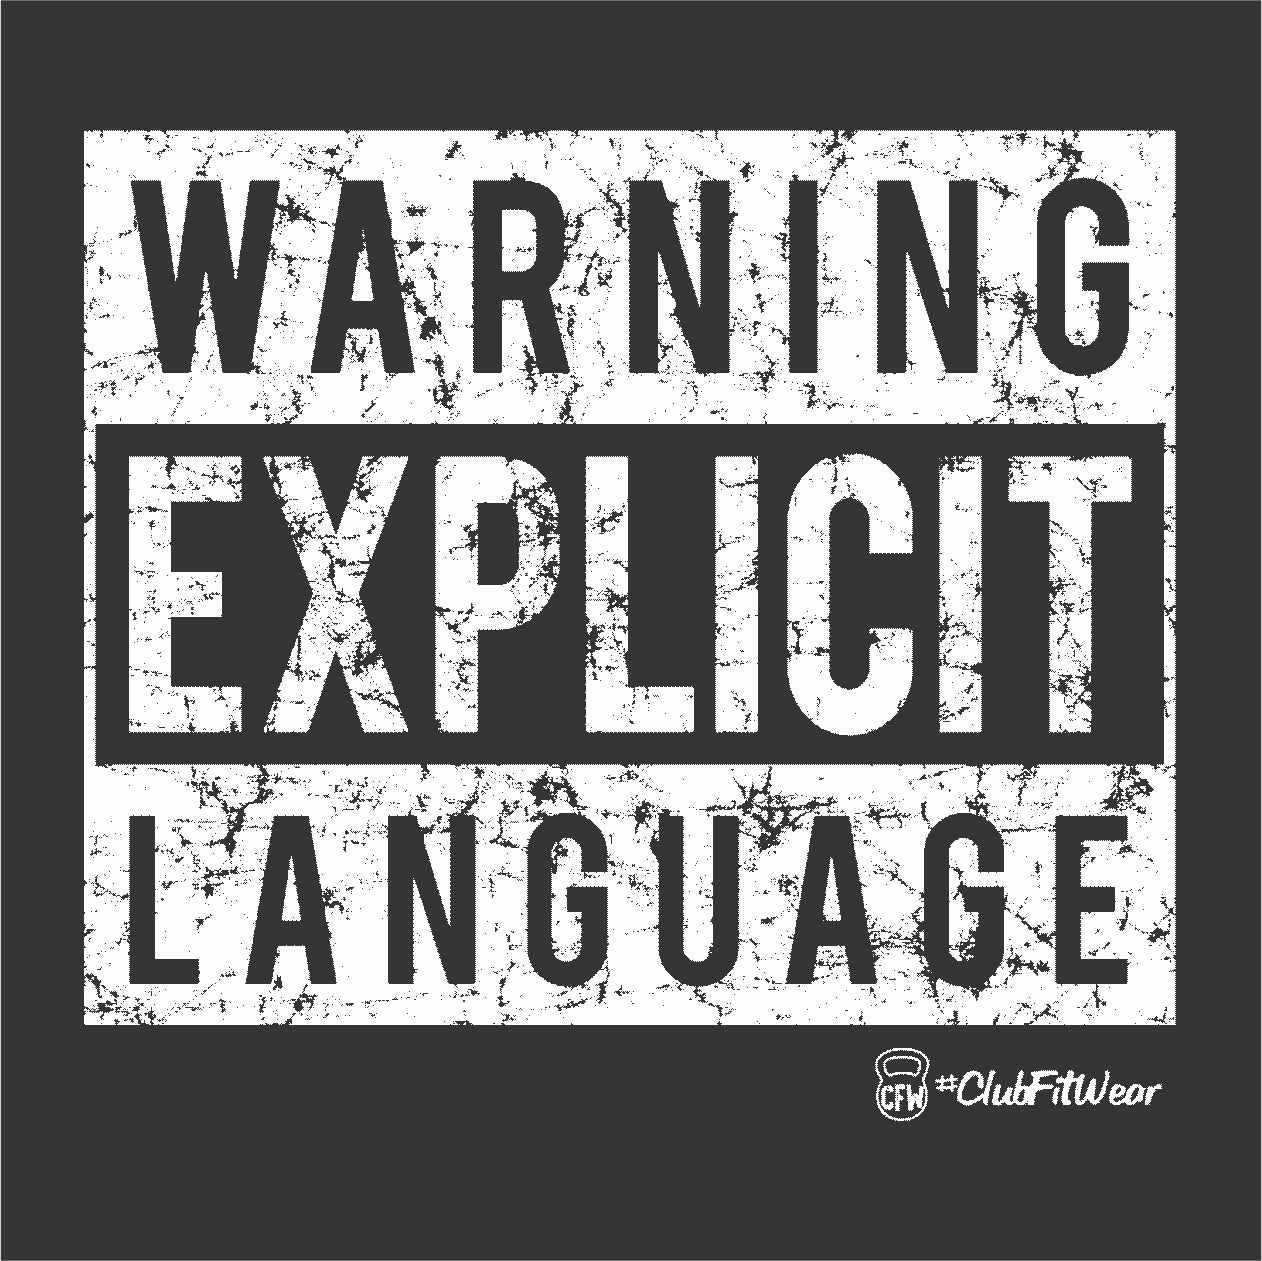 Warning Explicit Language